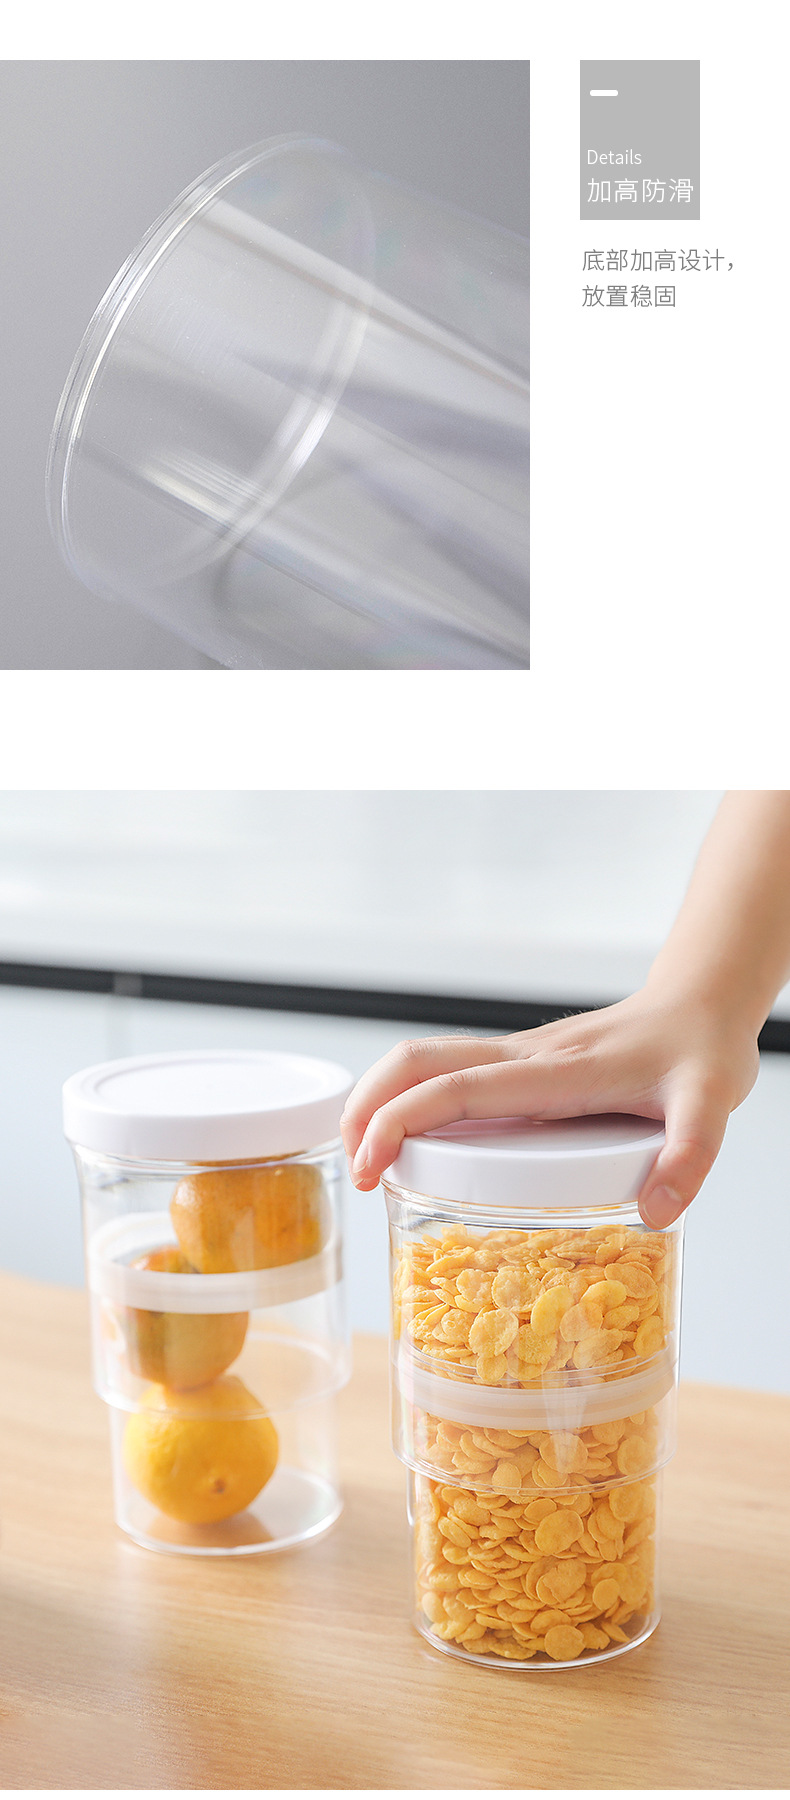 可伸縮密封儲物罐 按壓式真空五穀雜糧收納罐 廚房必備食品保鮮盒 密封罐